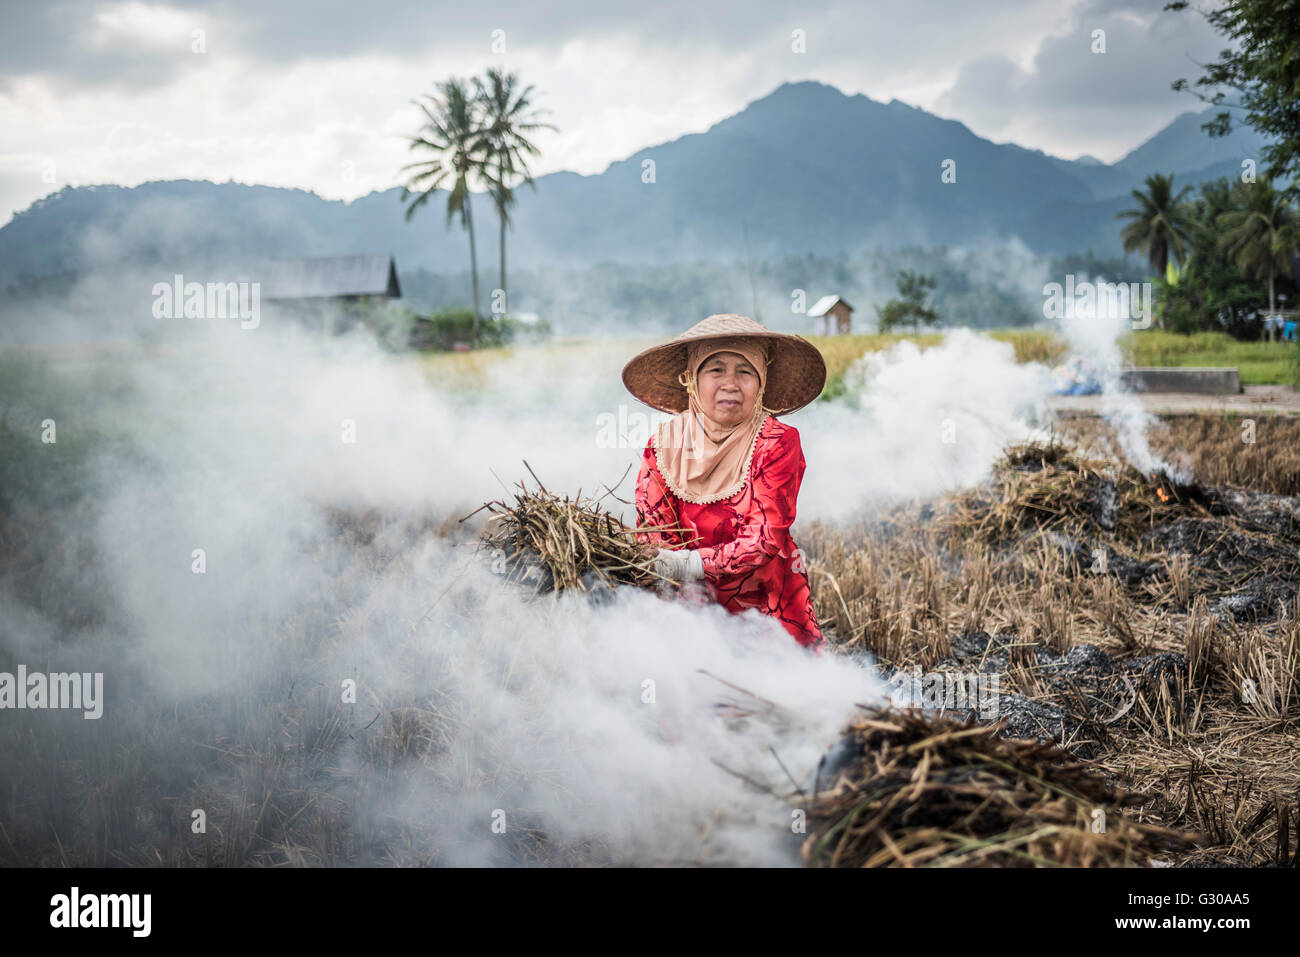 La combustion dans les cultures des agriculteurs des rizières, Bukittinggi, à l'Ouest de Sumatra, Indonésie, Asie du Sud, Asie Banque D'Images